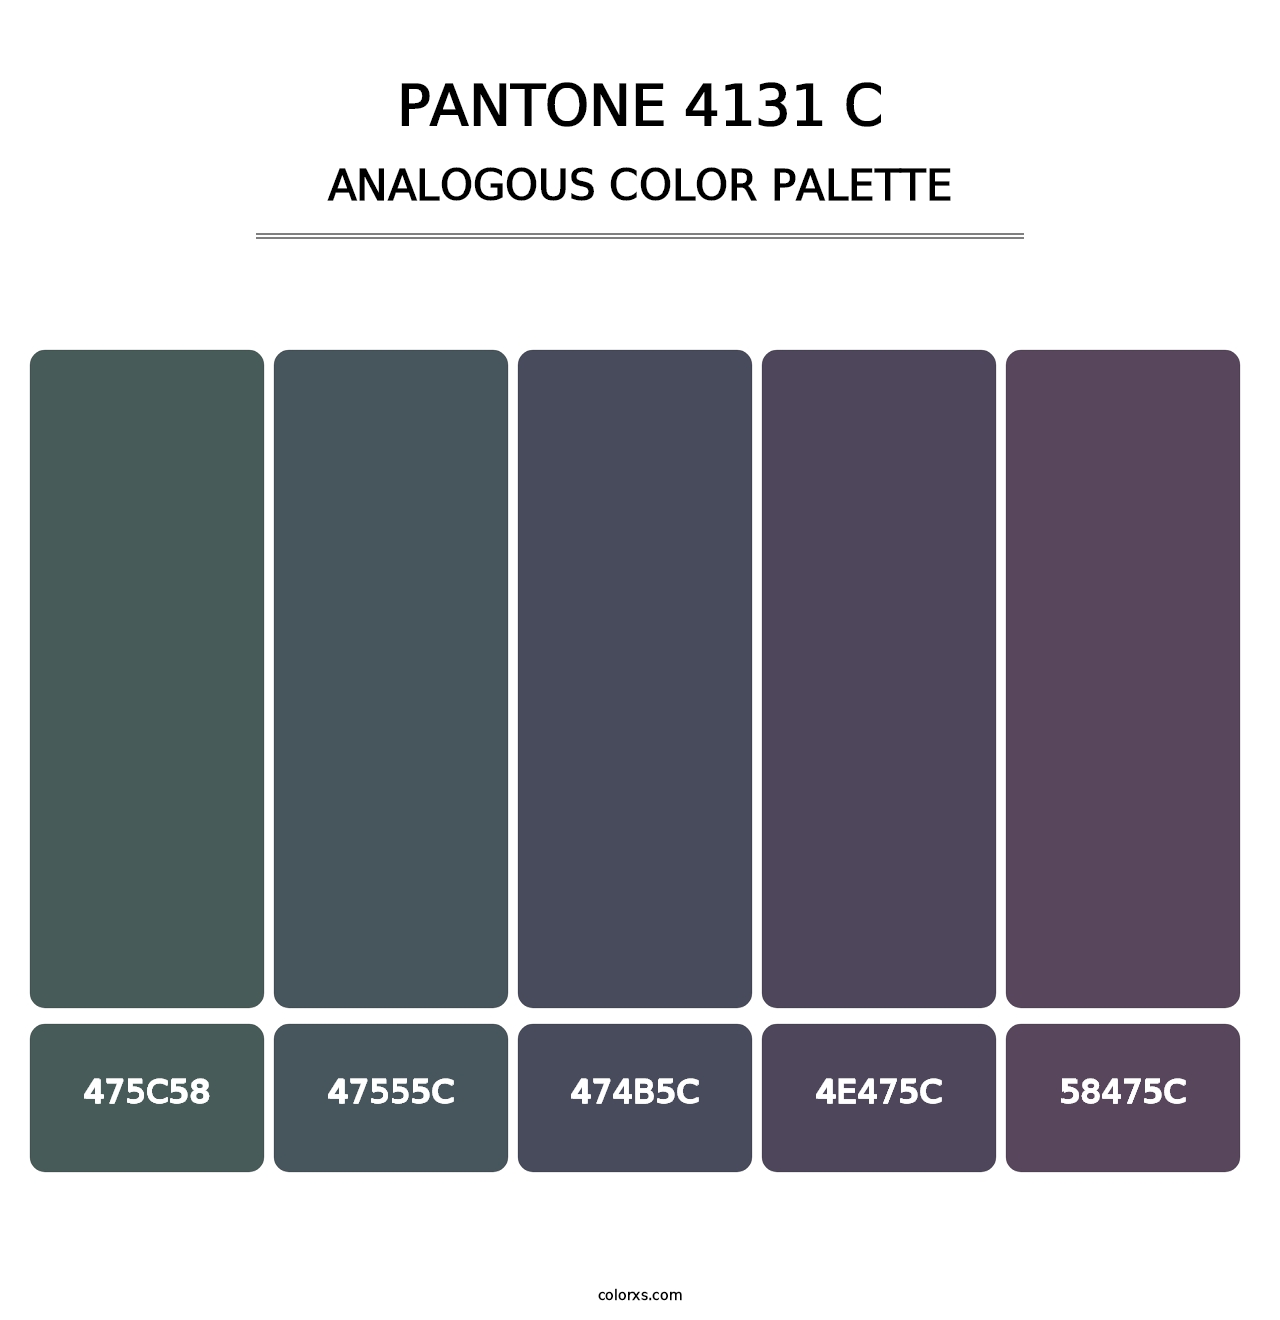 PANTONE 4131 C - Analogous Color Palette